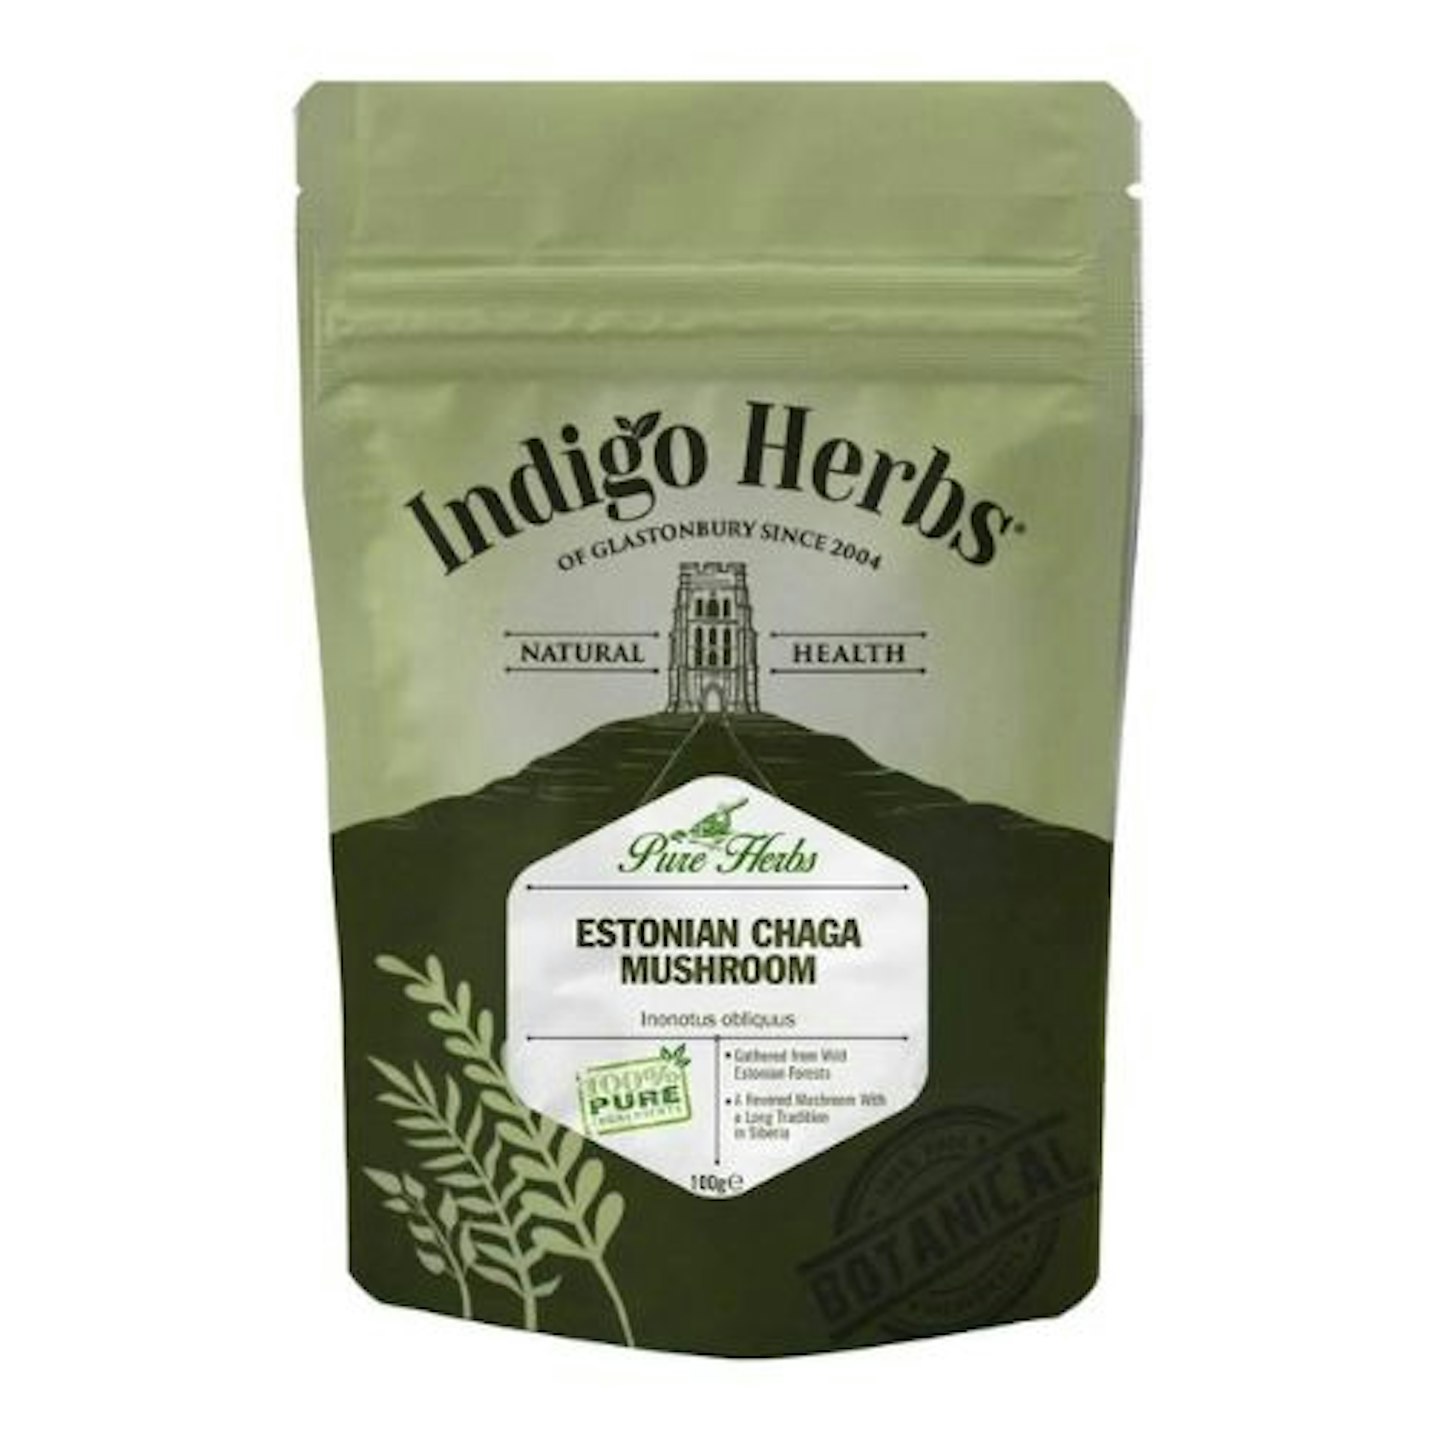 Indigo Herbs Estonian Chaga Mushroom